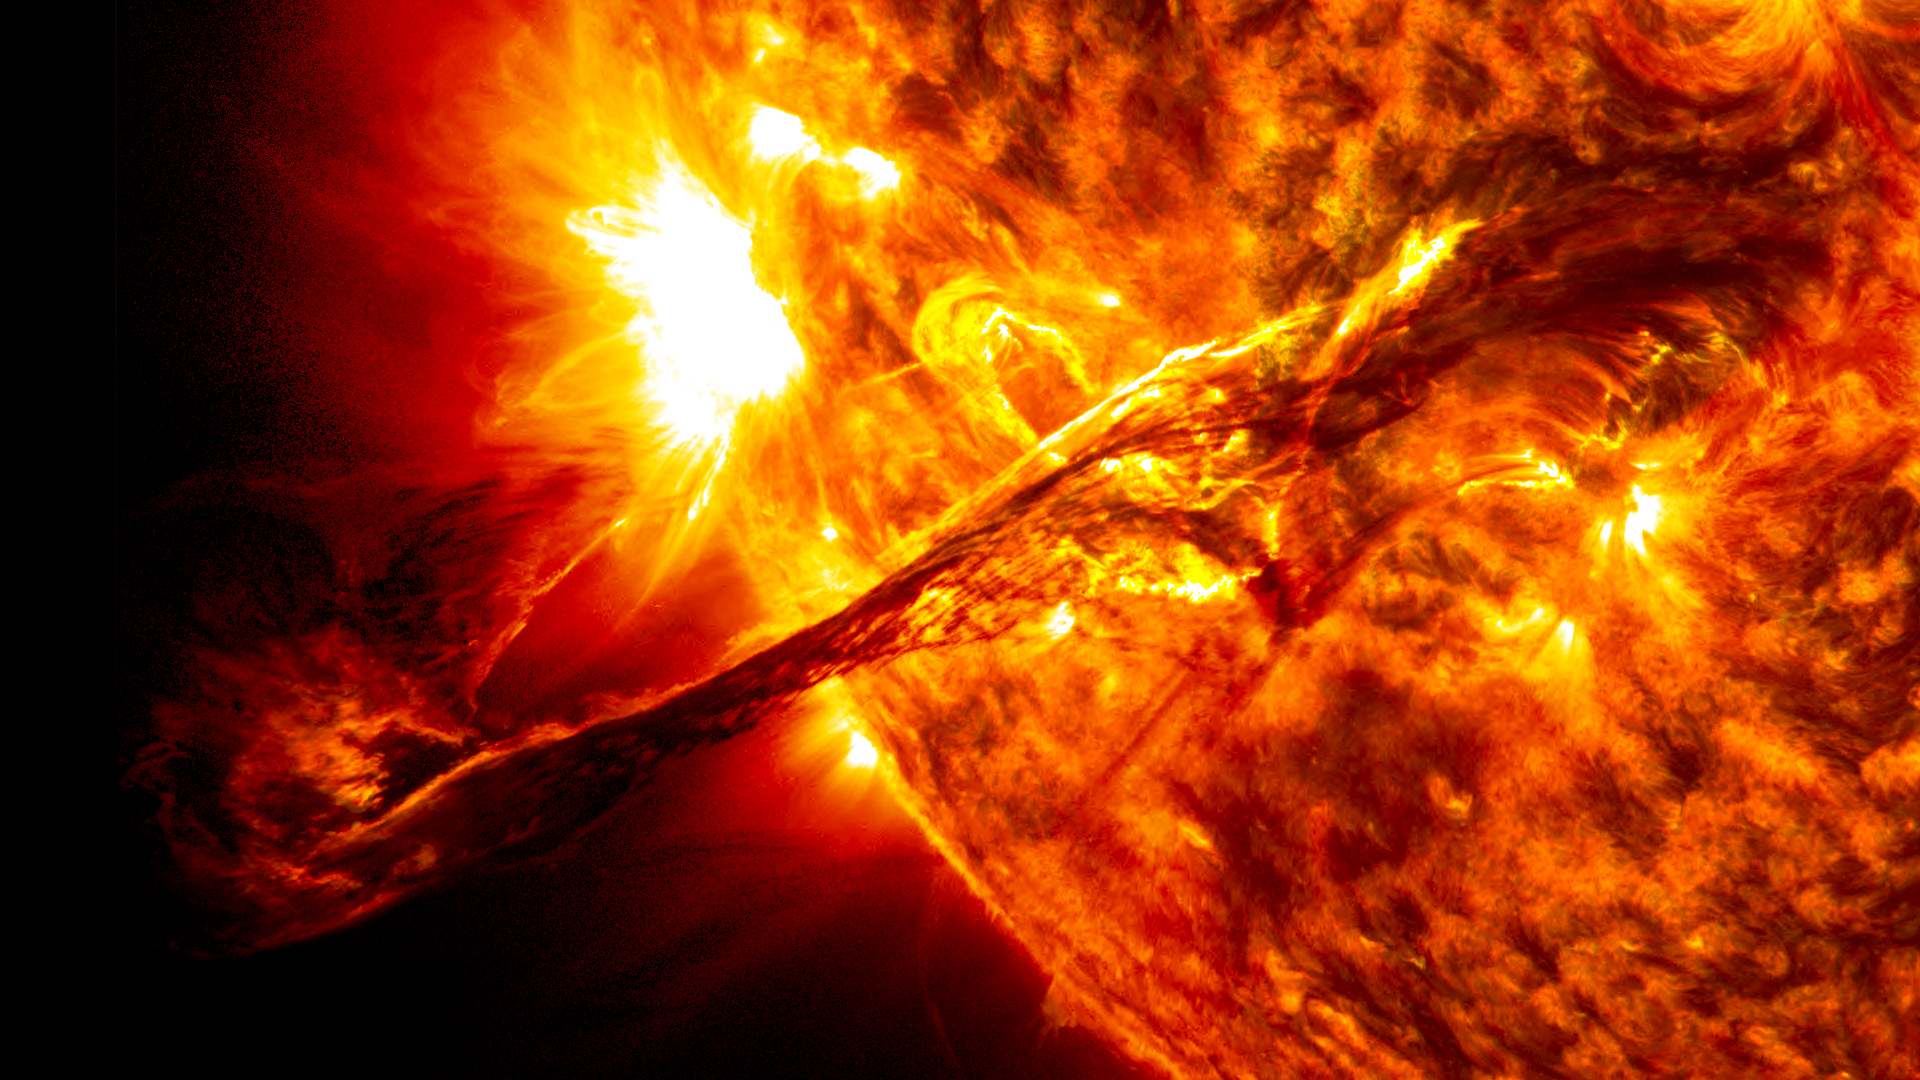 Curie étudiera l'origine des ondes radio solaires dans les éjections de masse coronale, comme celle observée dans les longueurs d'onde de 304 et 171 angströms par l'Observatoire de la dynamique solaire de la Nasa. © Centre de vol spatial Nasa, Goddard